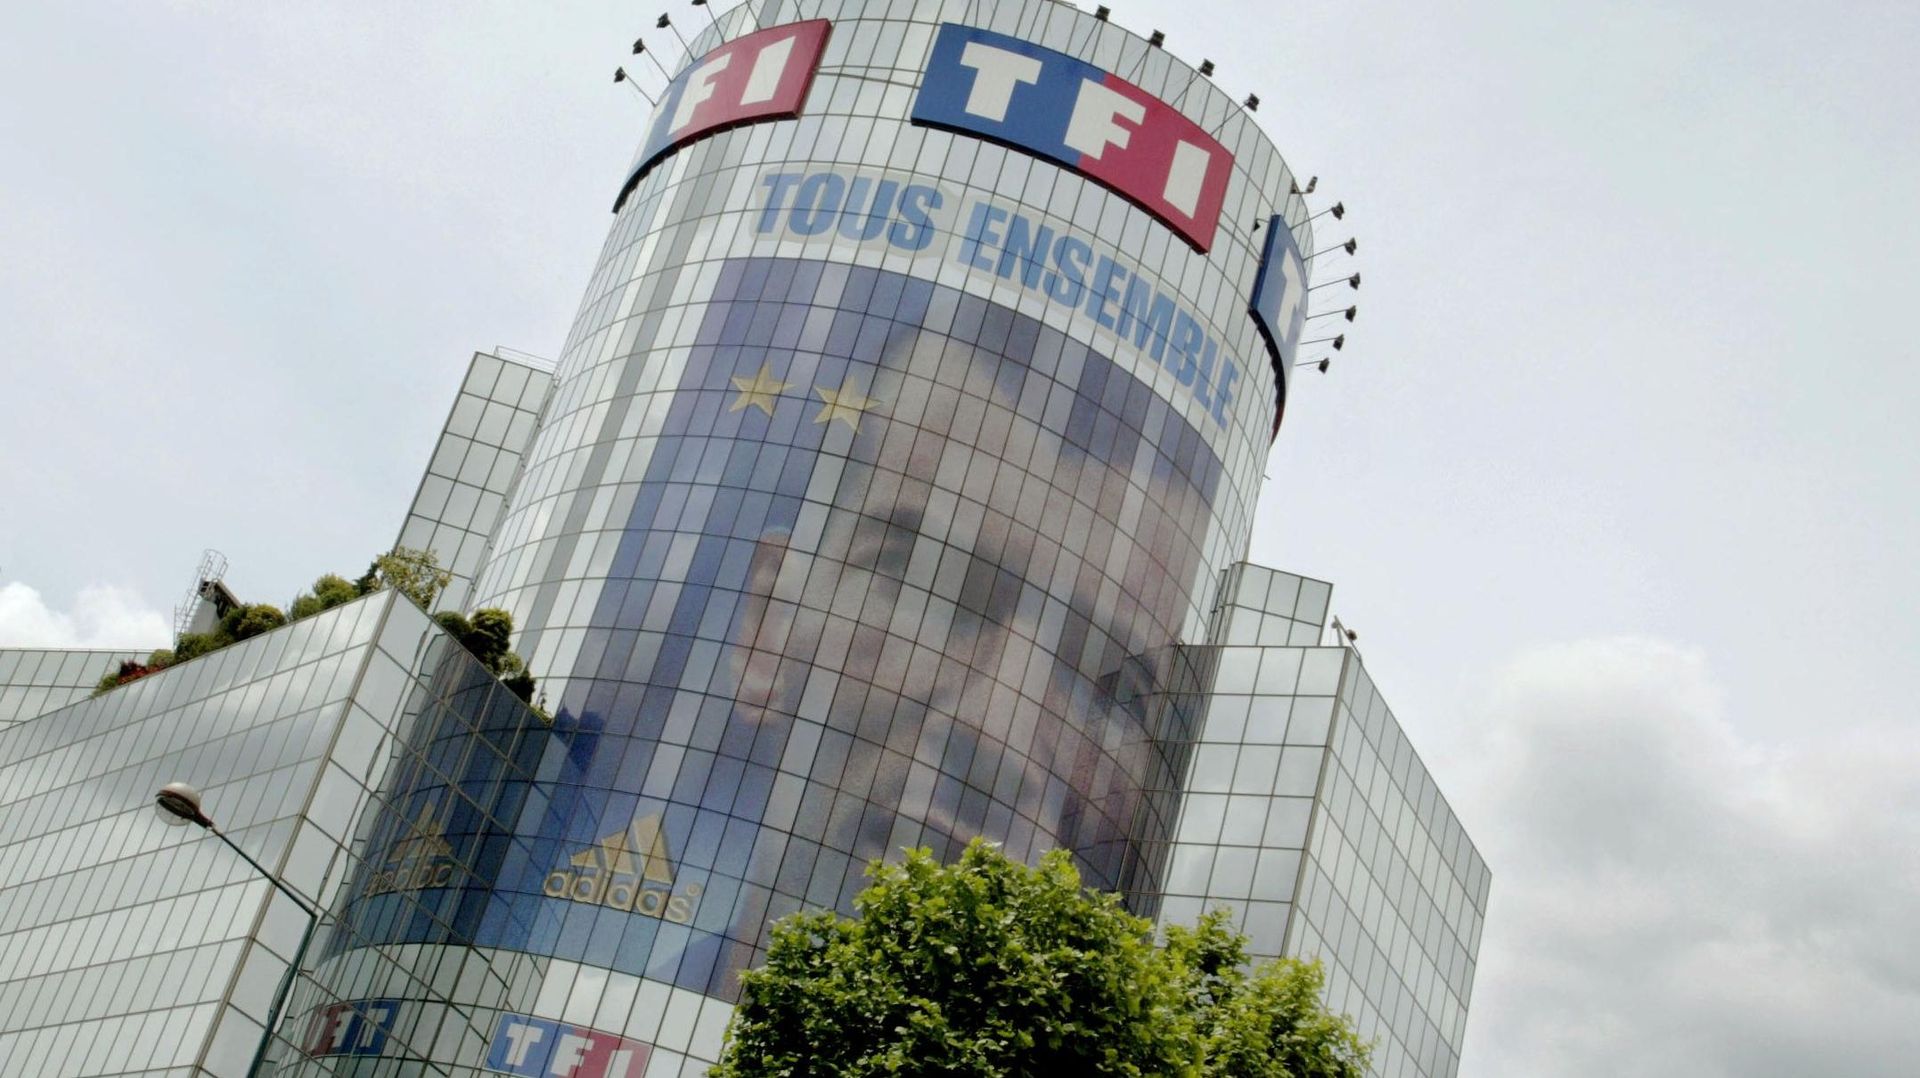 La chaîne de télévision française TF1 a récemment signé avec la régie publicitaire néerlandophone Transfer un accord de commercialisation de ses espaces publicitaires en Belgique, qui débutera en septembre 2017. 